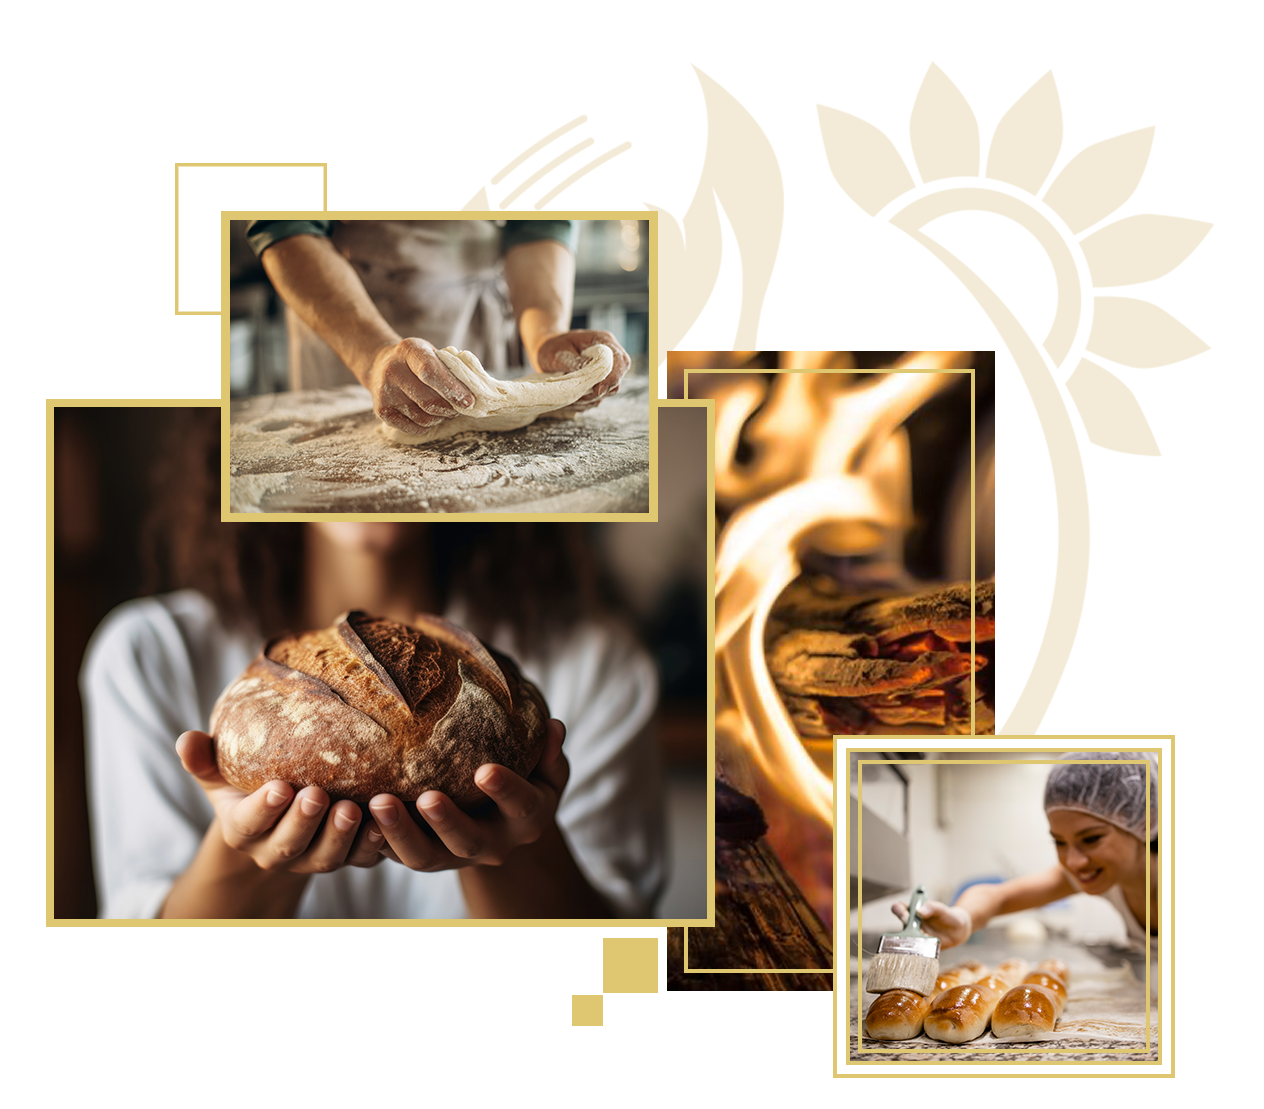 Produits de traditions - pains artisanaux